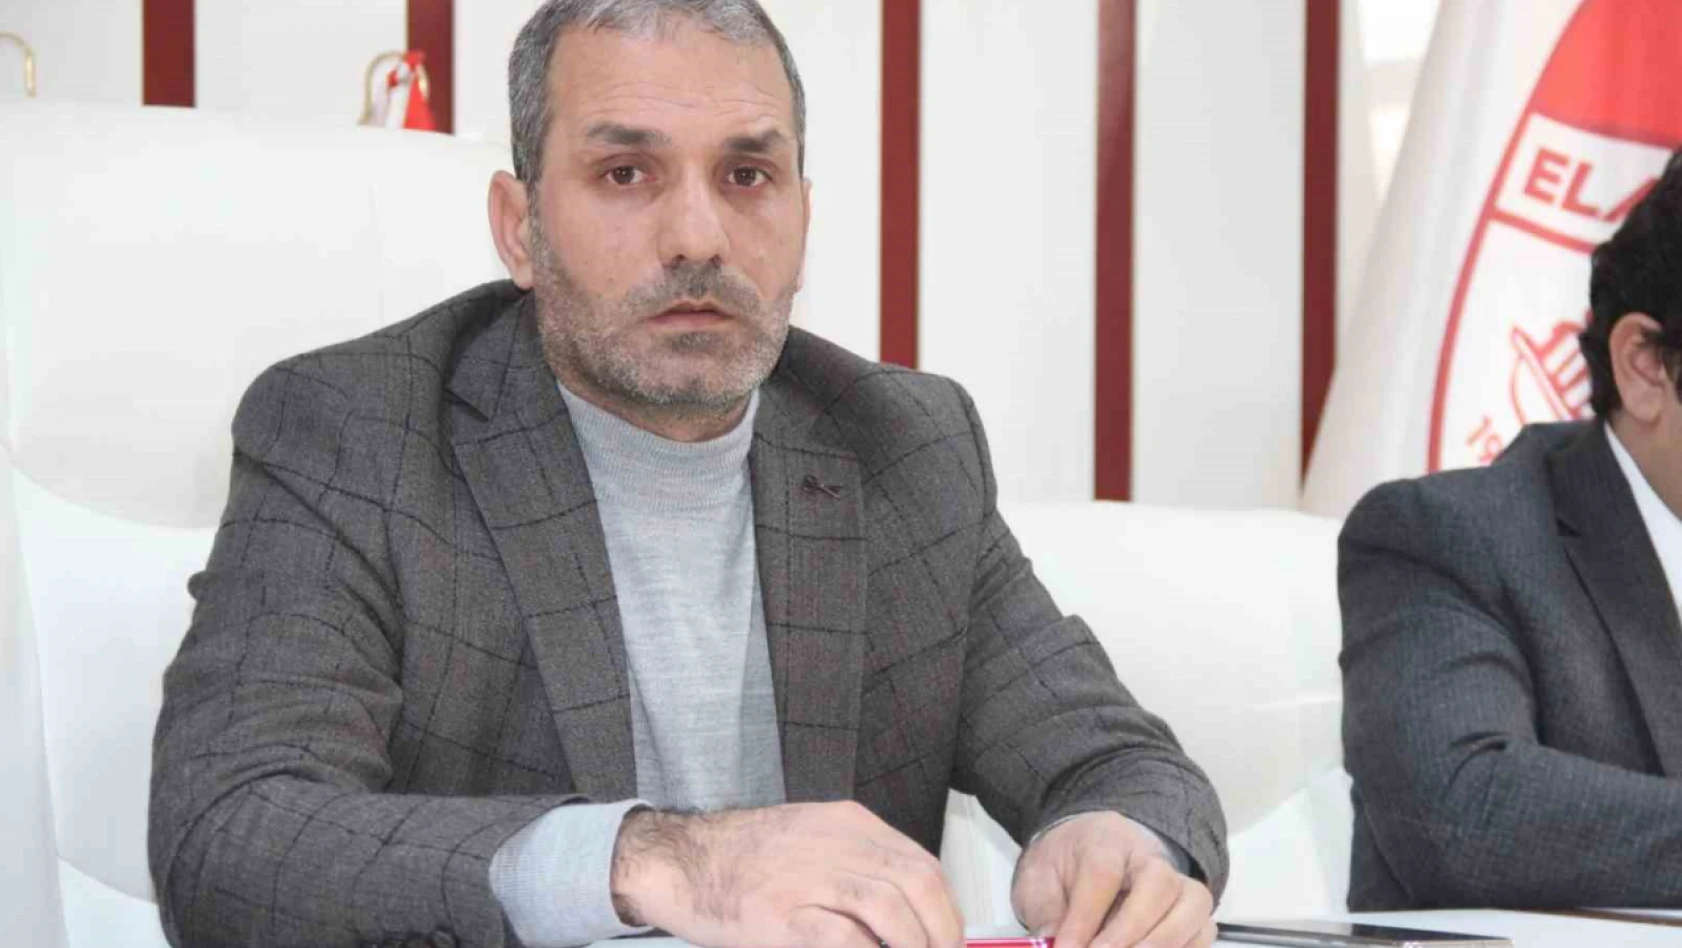 Elazığspor Başkanı Serkan Çayır'a başarılı operasyon